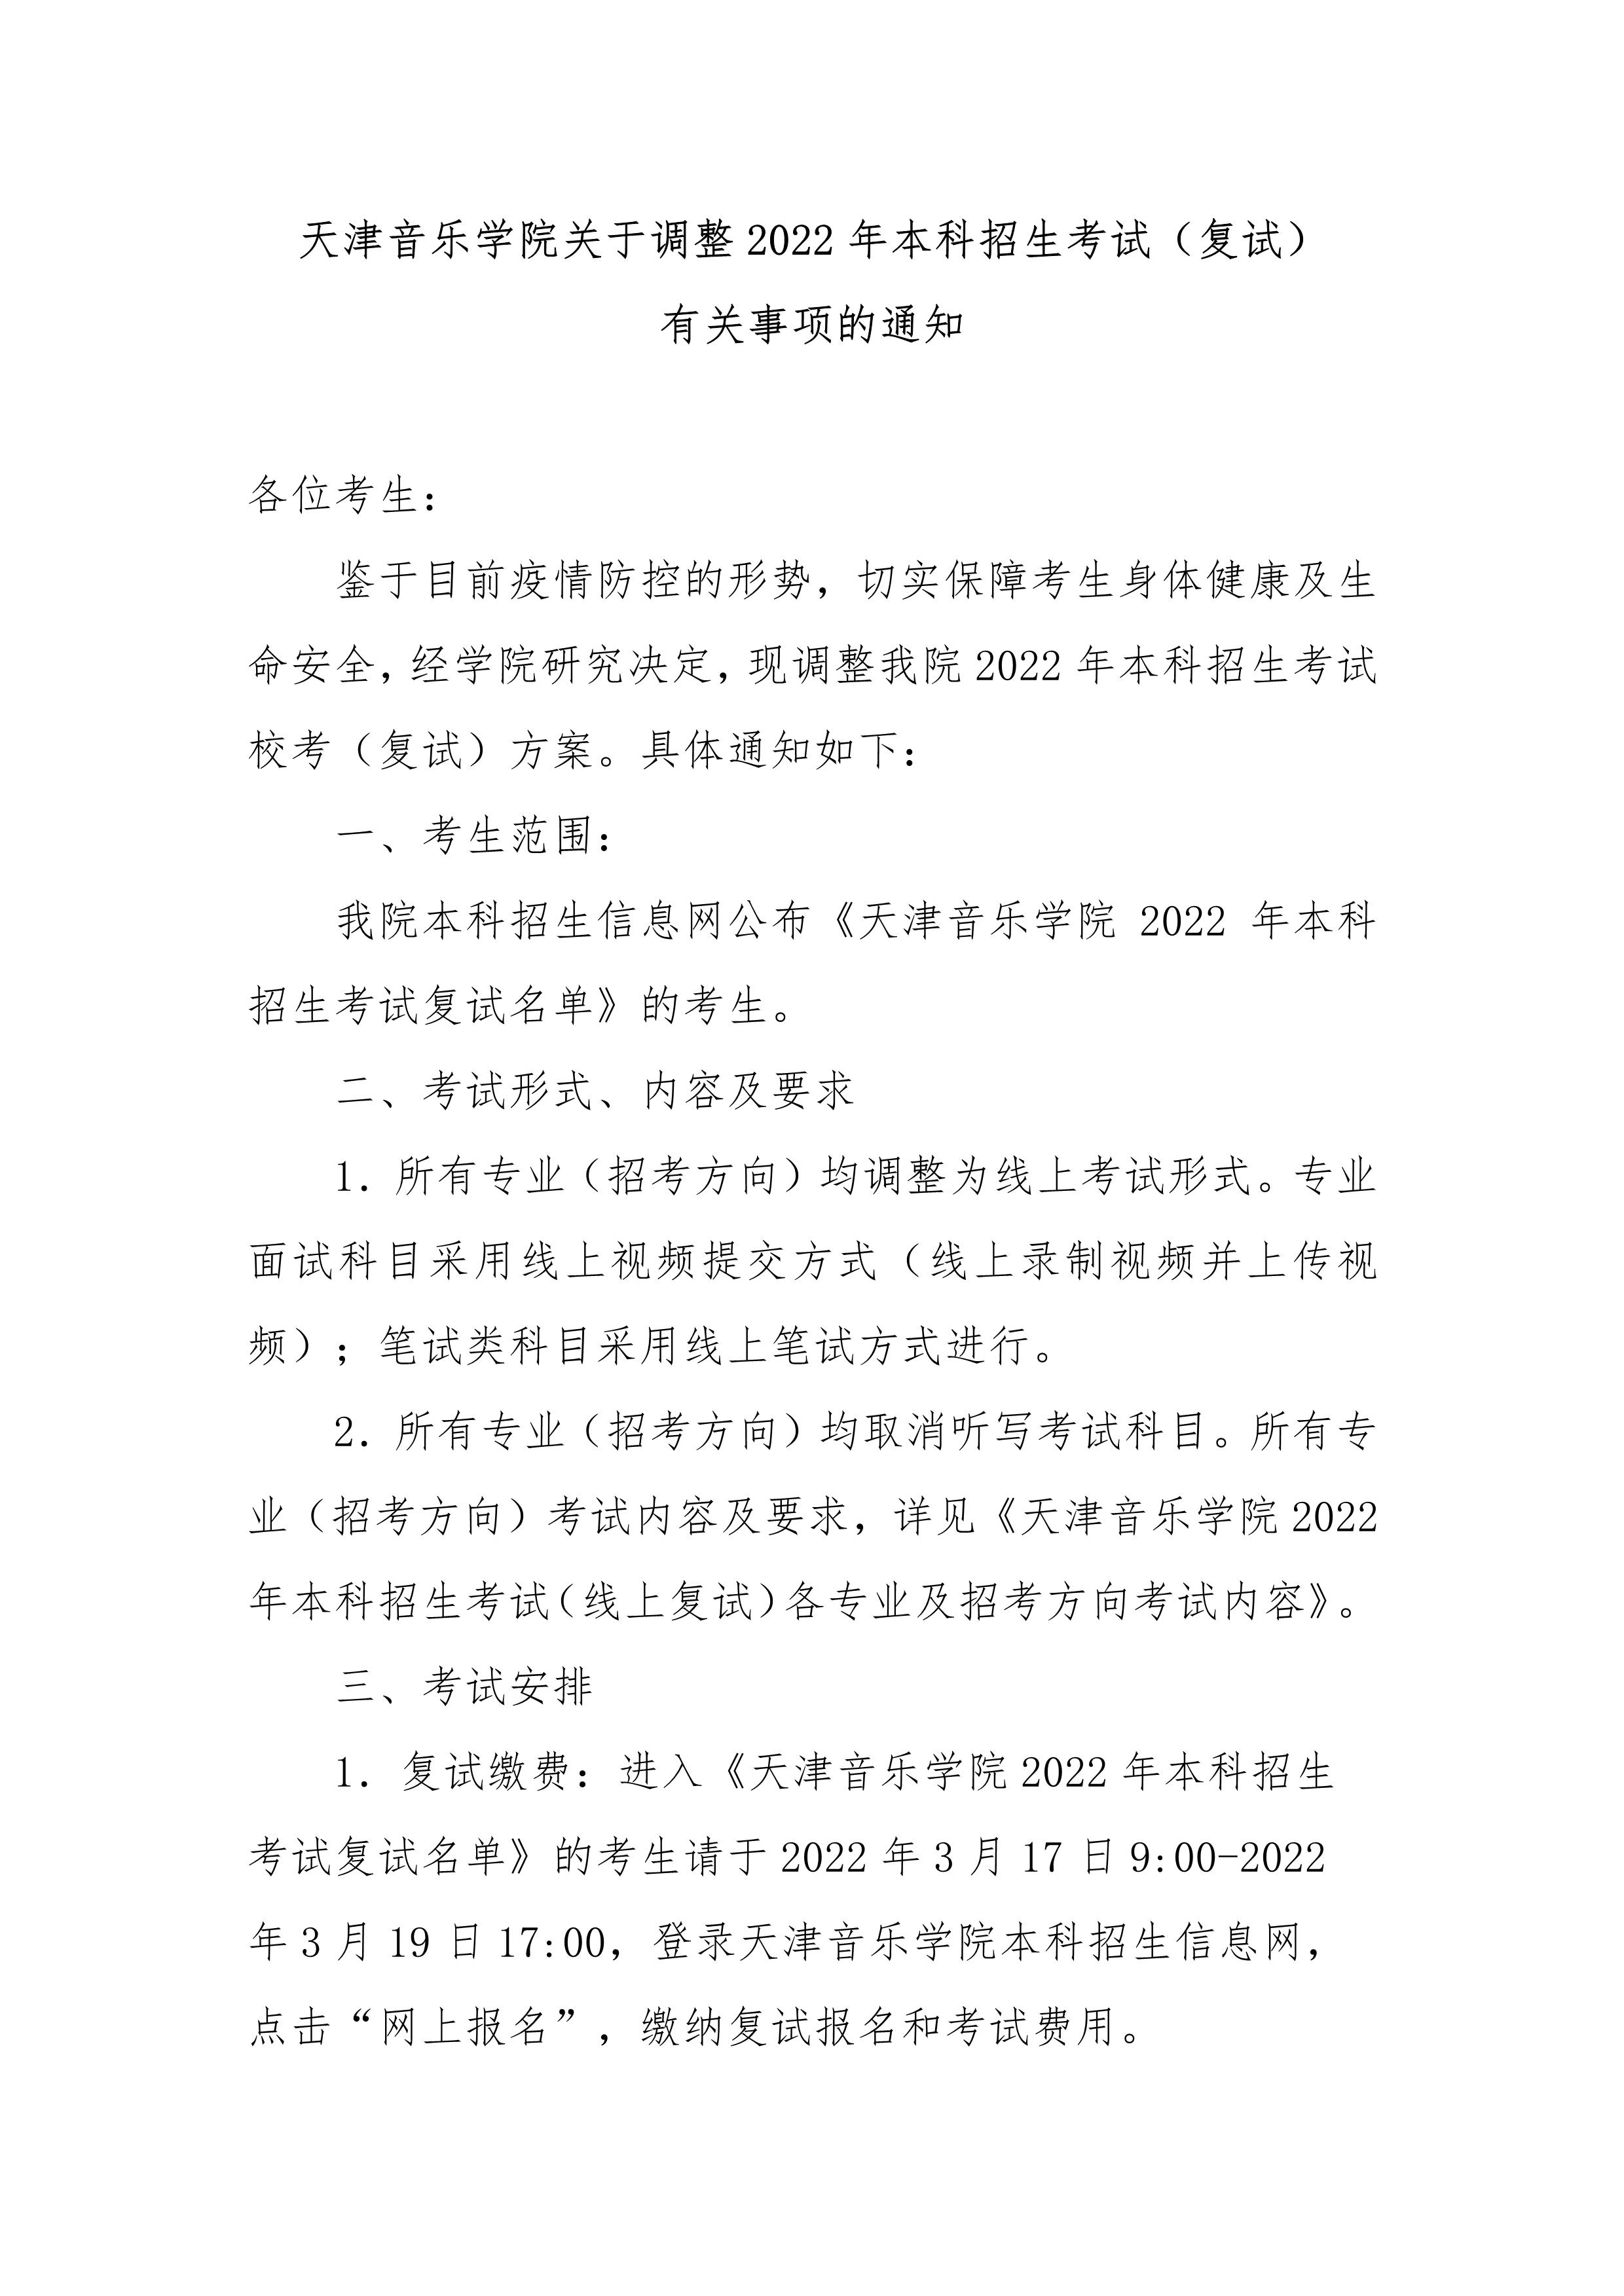 天津音乐学院关于调整2022年本科招生考试有关事项的通知_1.jpg